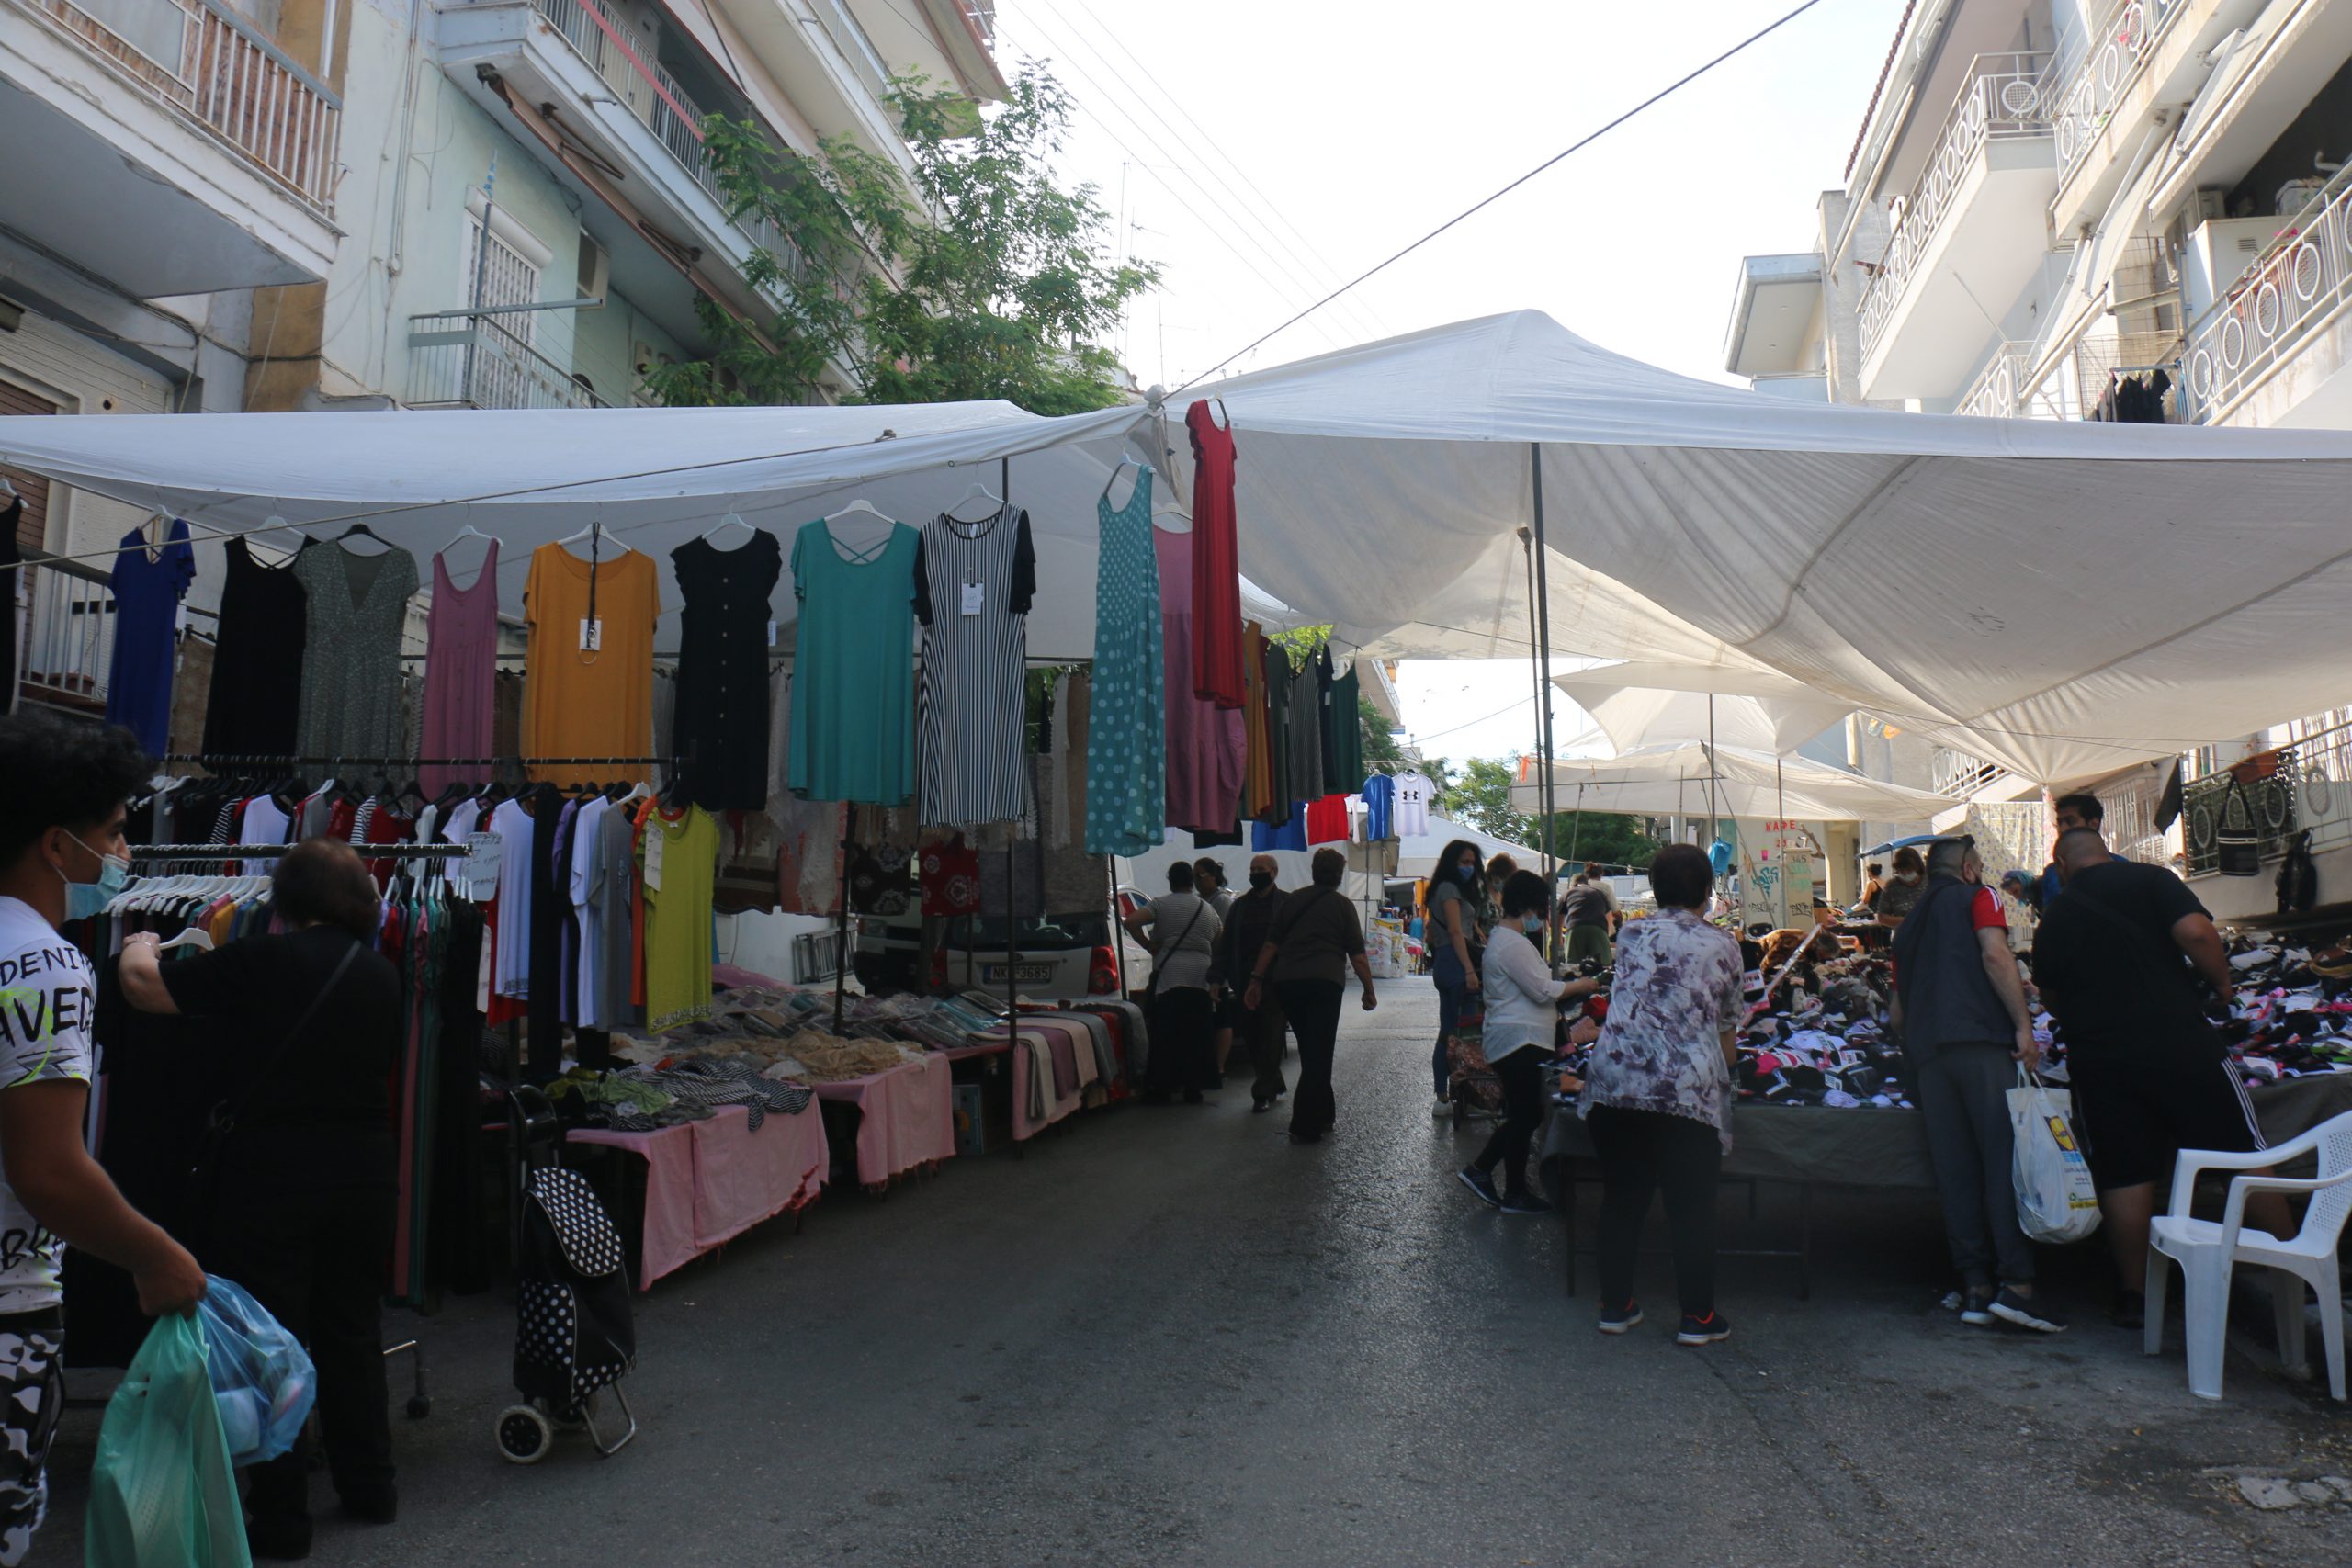 Θεσσαλονίκη: Χειροπέδες σε δύο άτομα για παρεμπόριο σε λαϊκή αγορά